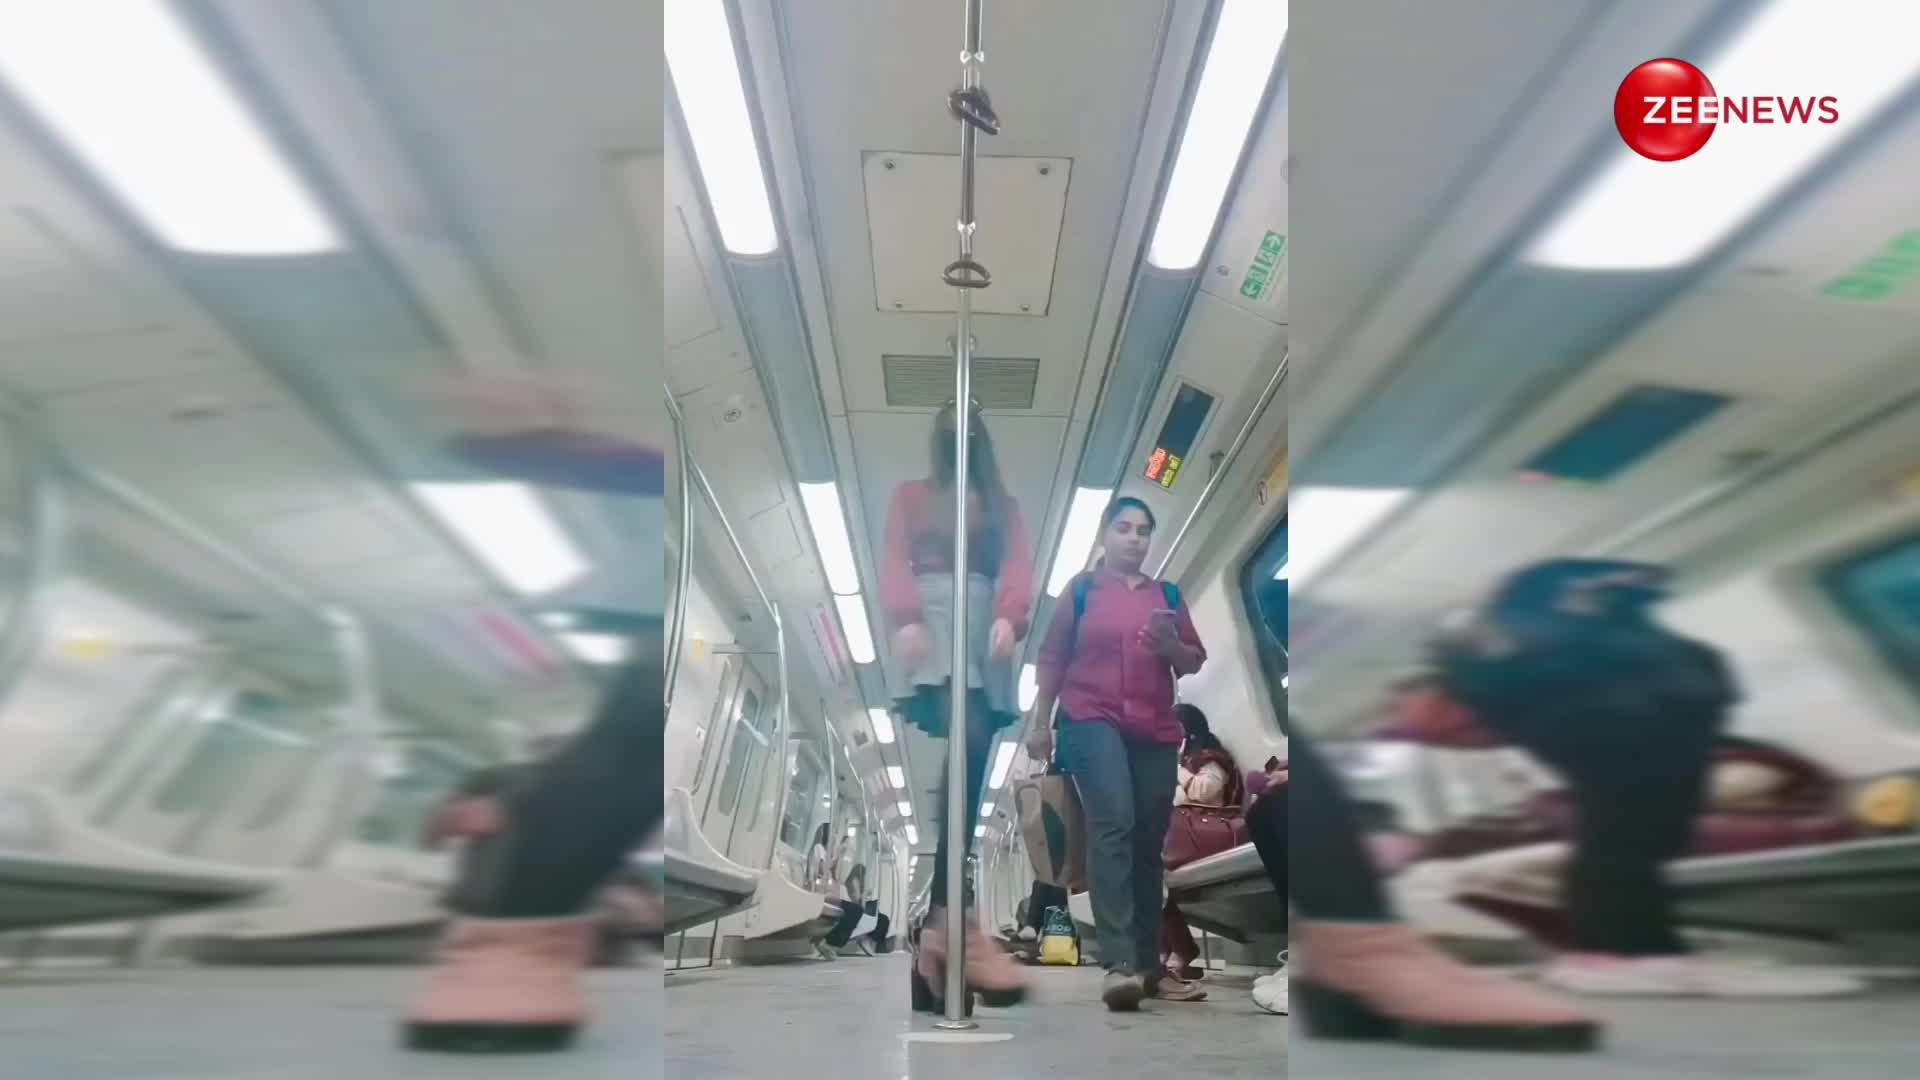 दिल्ली मेट्रो में लड़की ने डांस करते हुए रिकॉर्ड किया वीडियो, आखिर में हुआ कुछ ऐसा जानकार थम जाएगी आपकी सांसें